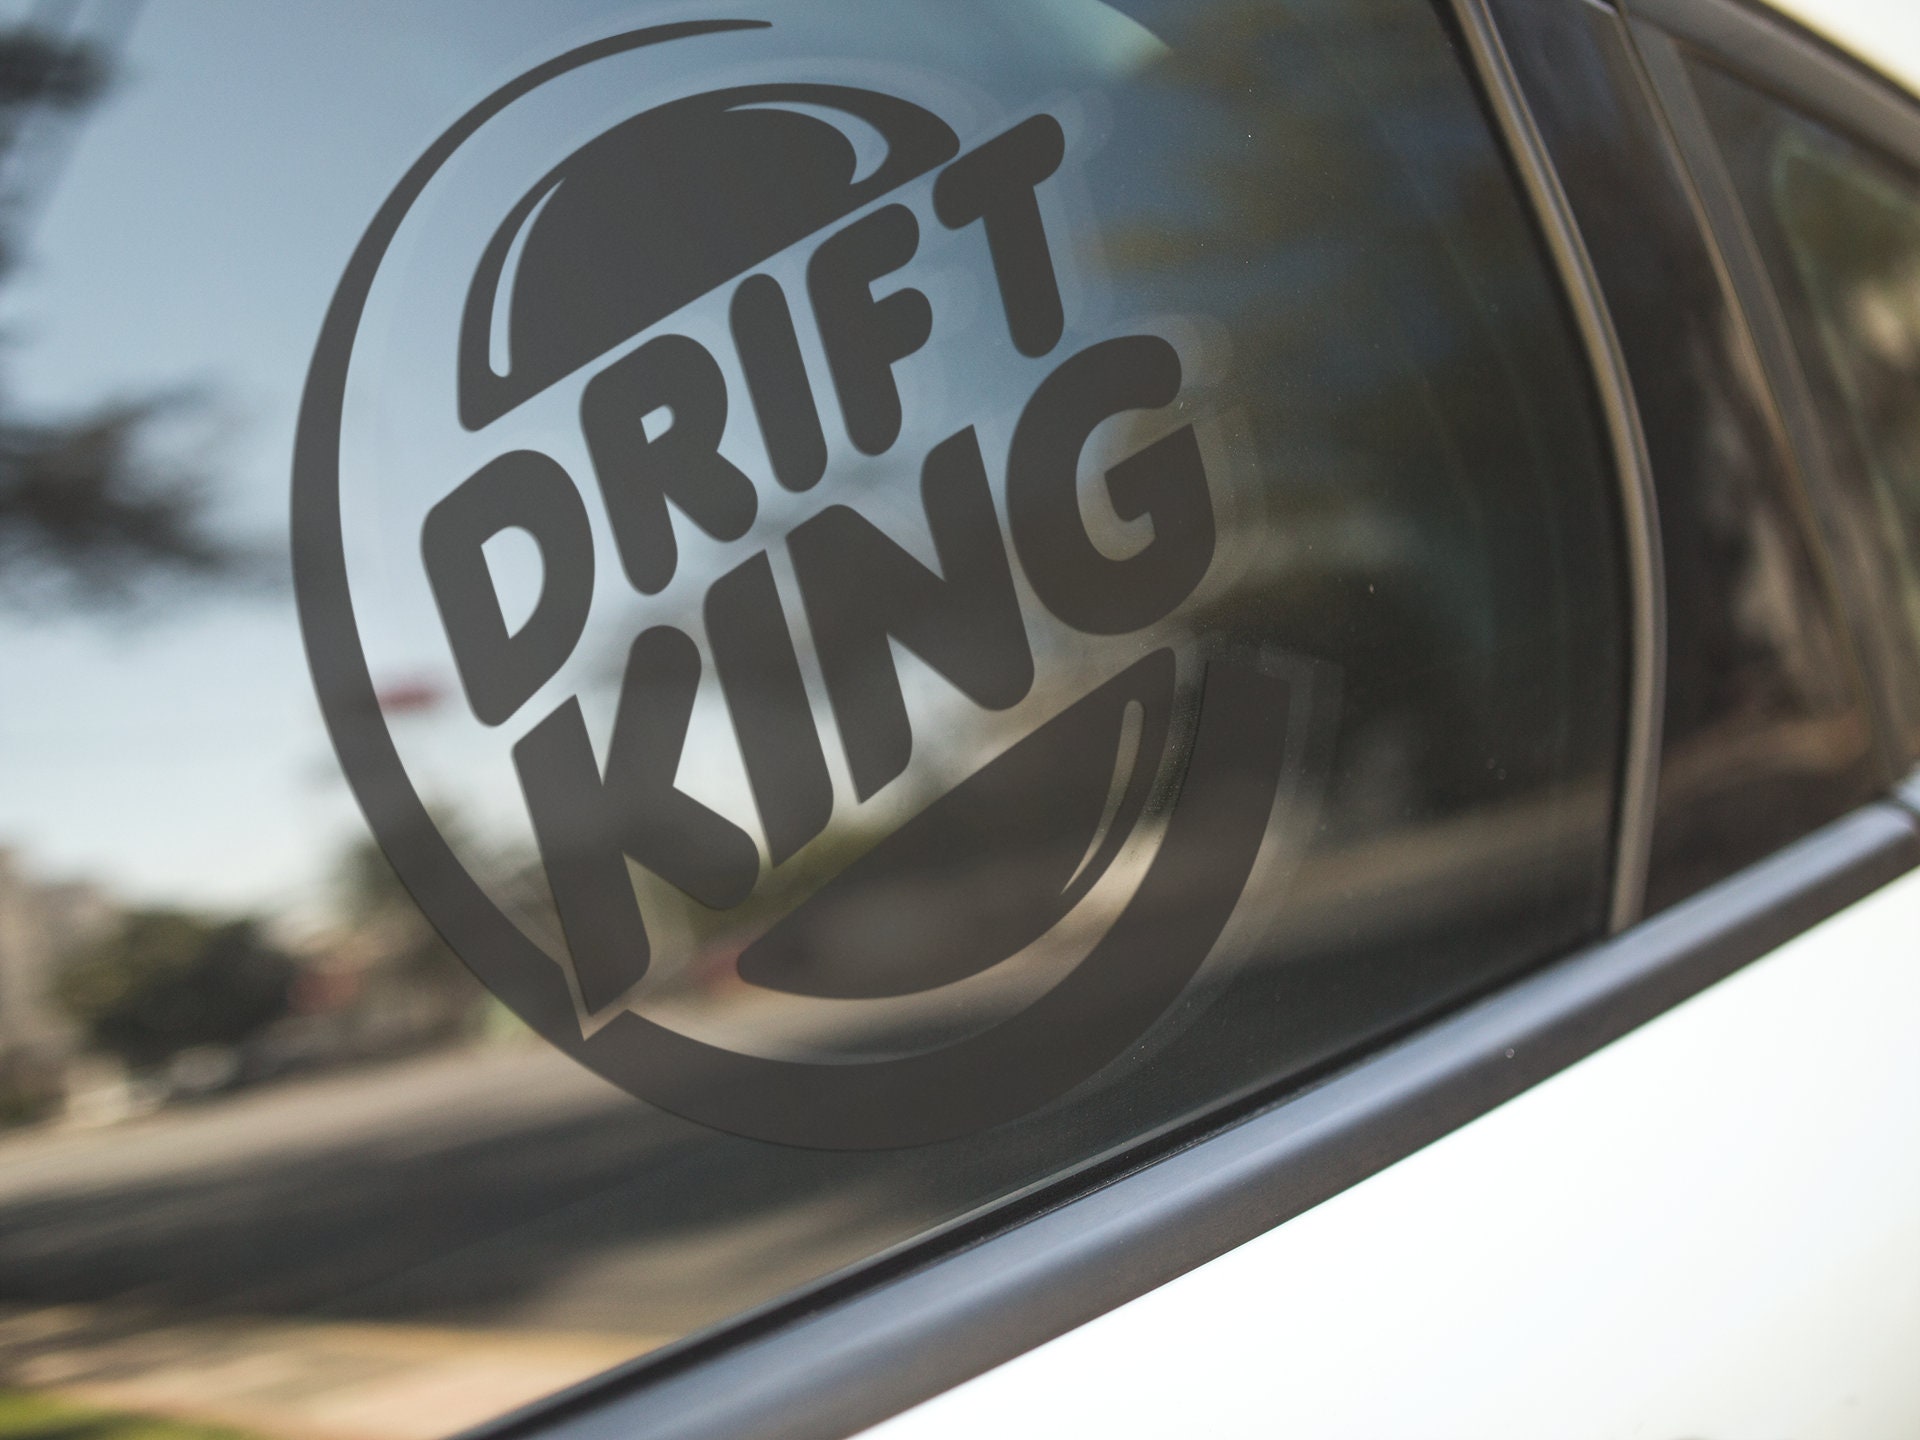 JDM Drift King Thug Life Car Fits Jeep Truck Yeti Window Phone Sticker  Decal